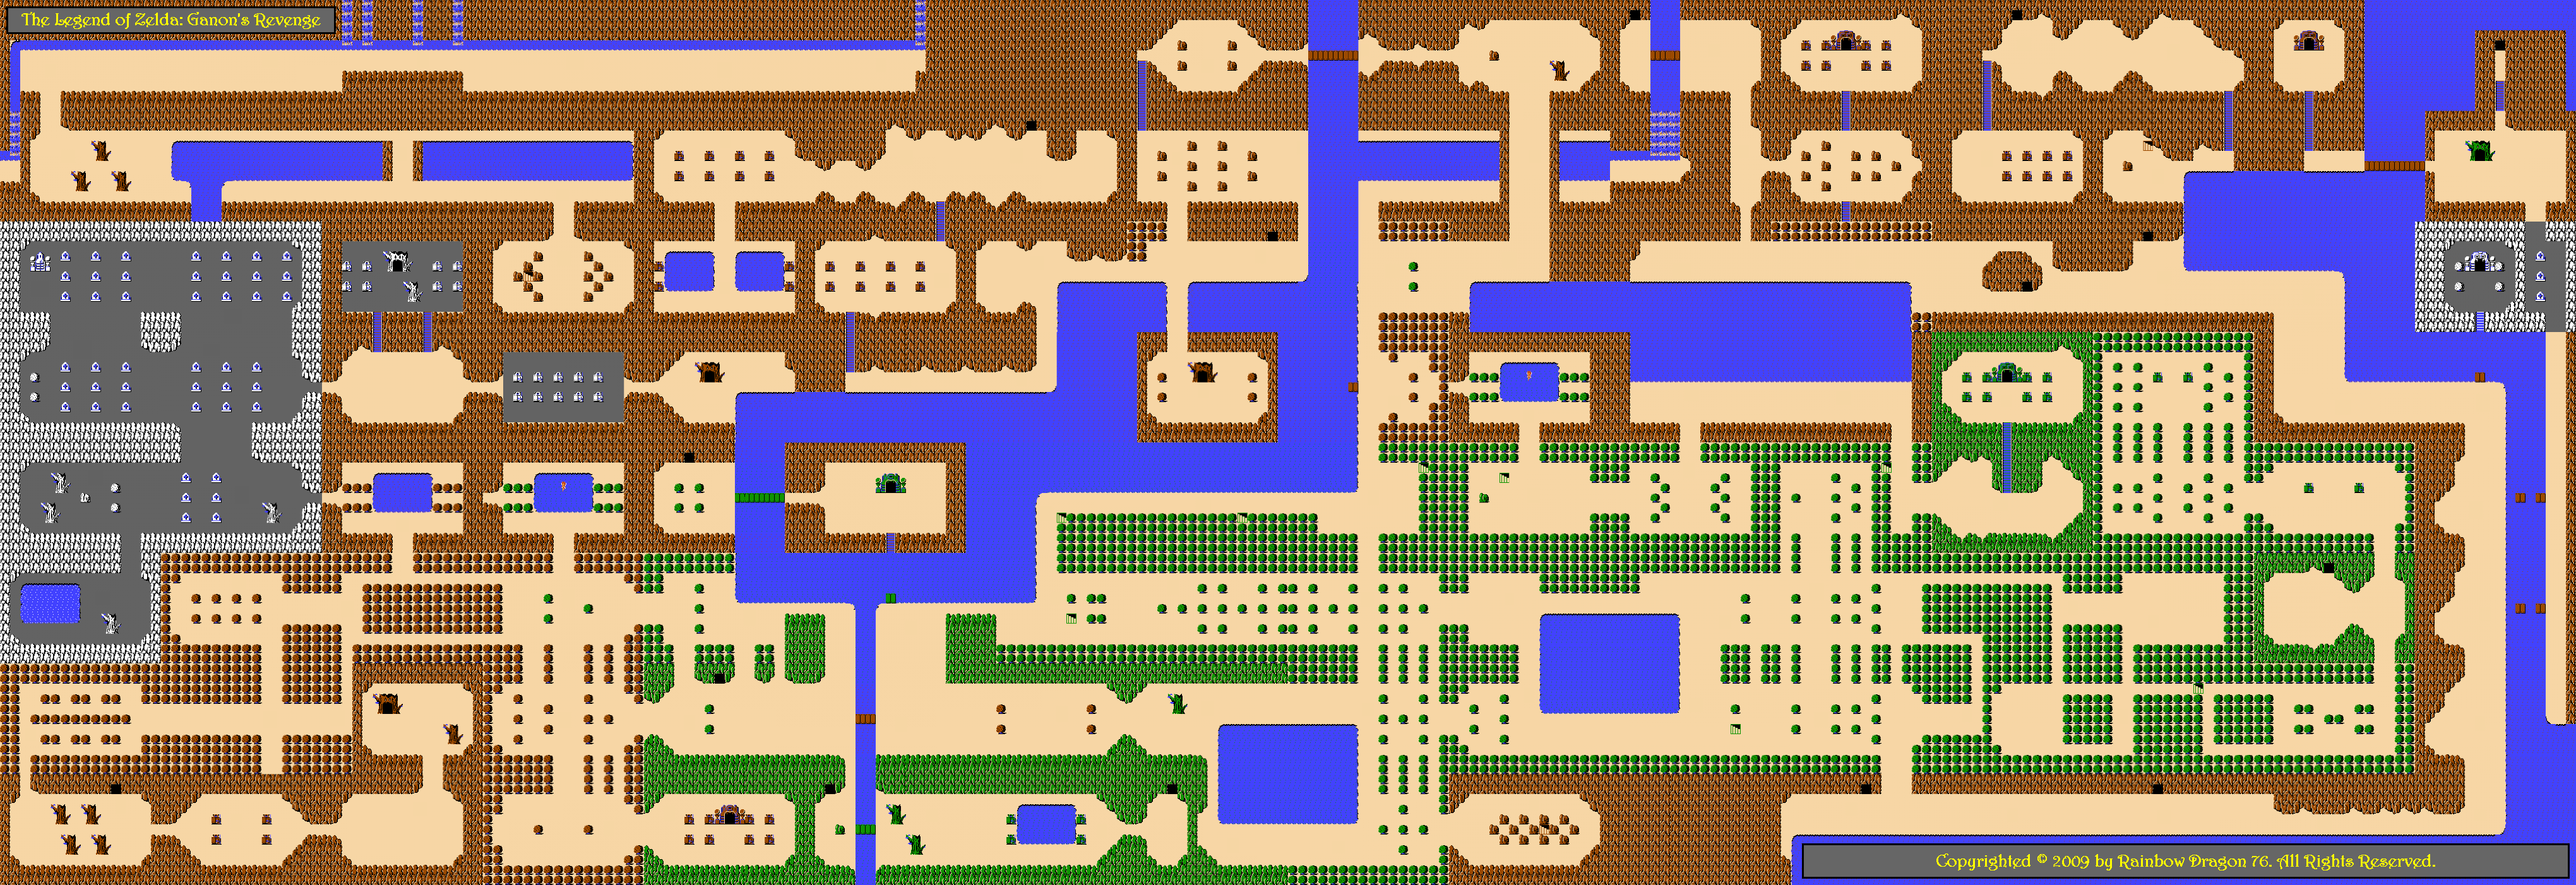 All sizes Overworld Map of The Legend of Zelda: Ganon s Revenge. www.flickr...